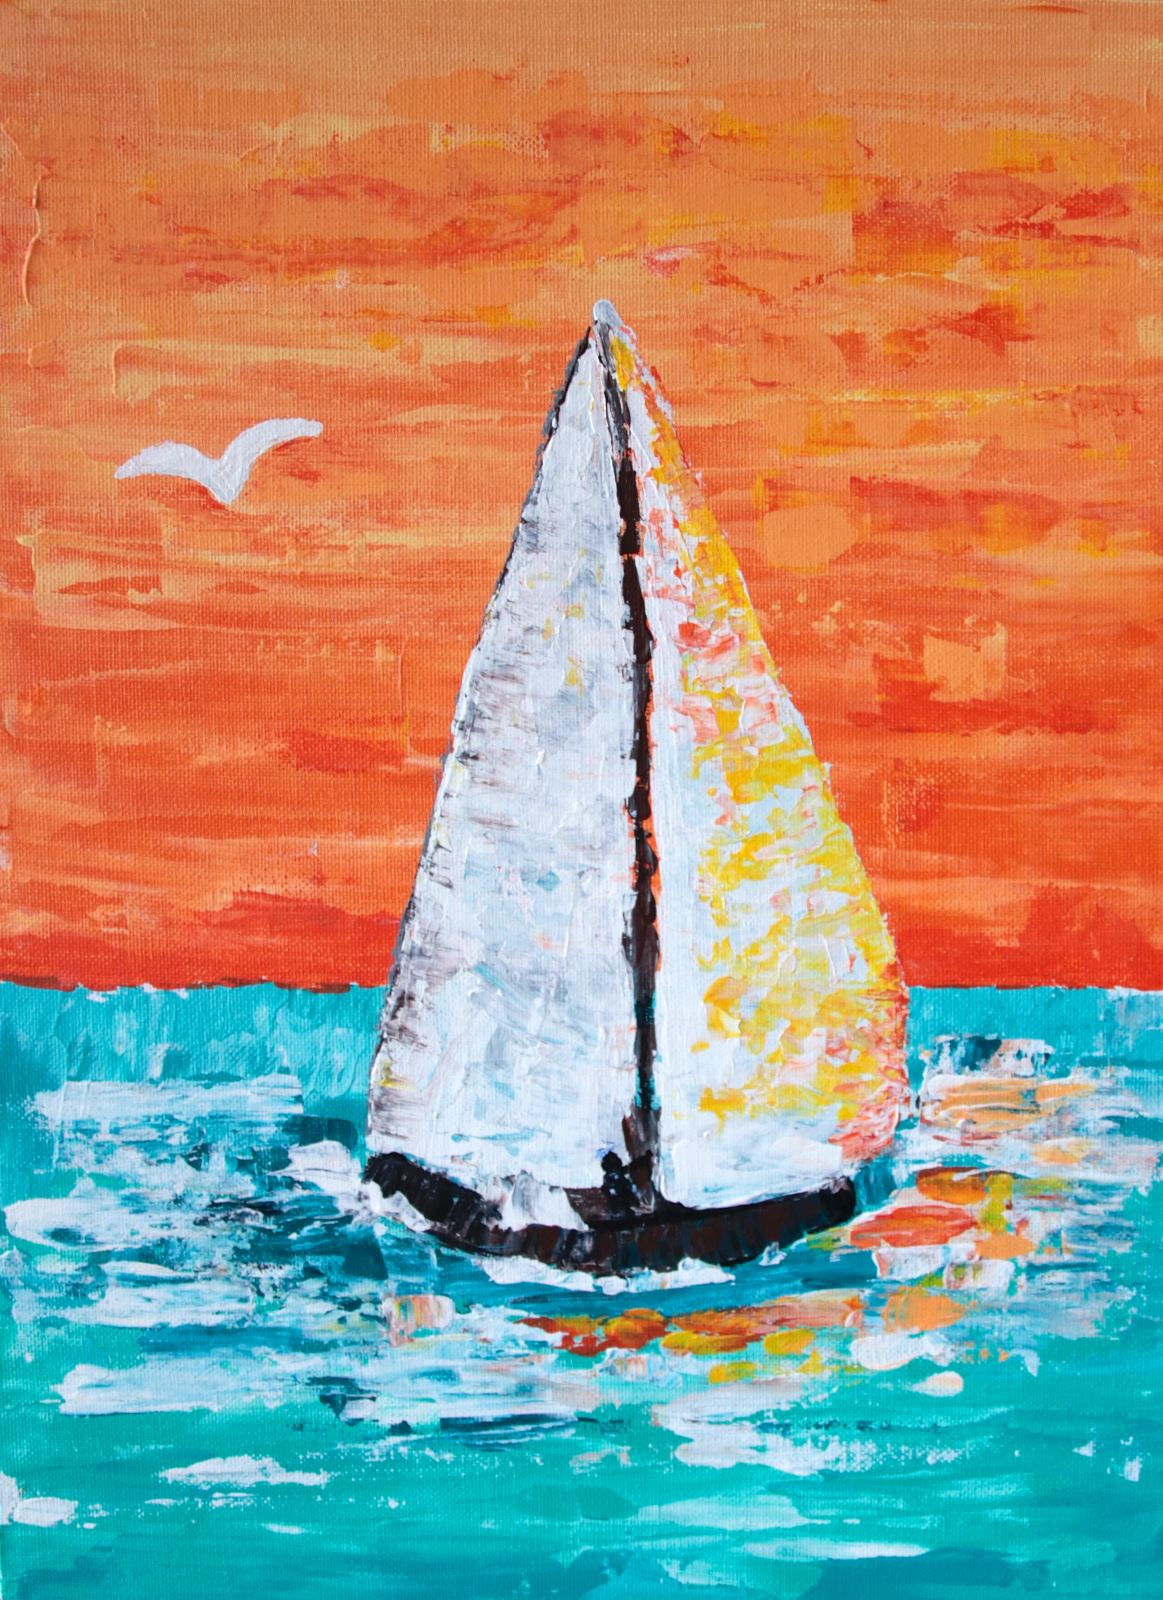 Sommerbrise - Sommer Farben in einer maritimen Szene - 30x40 cm